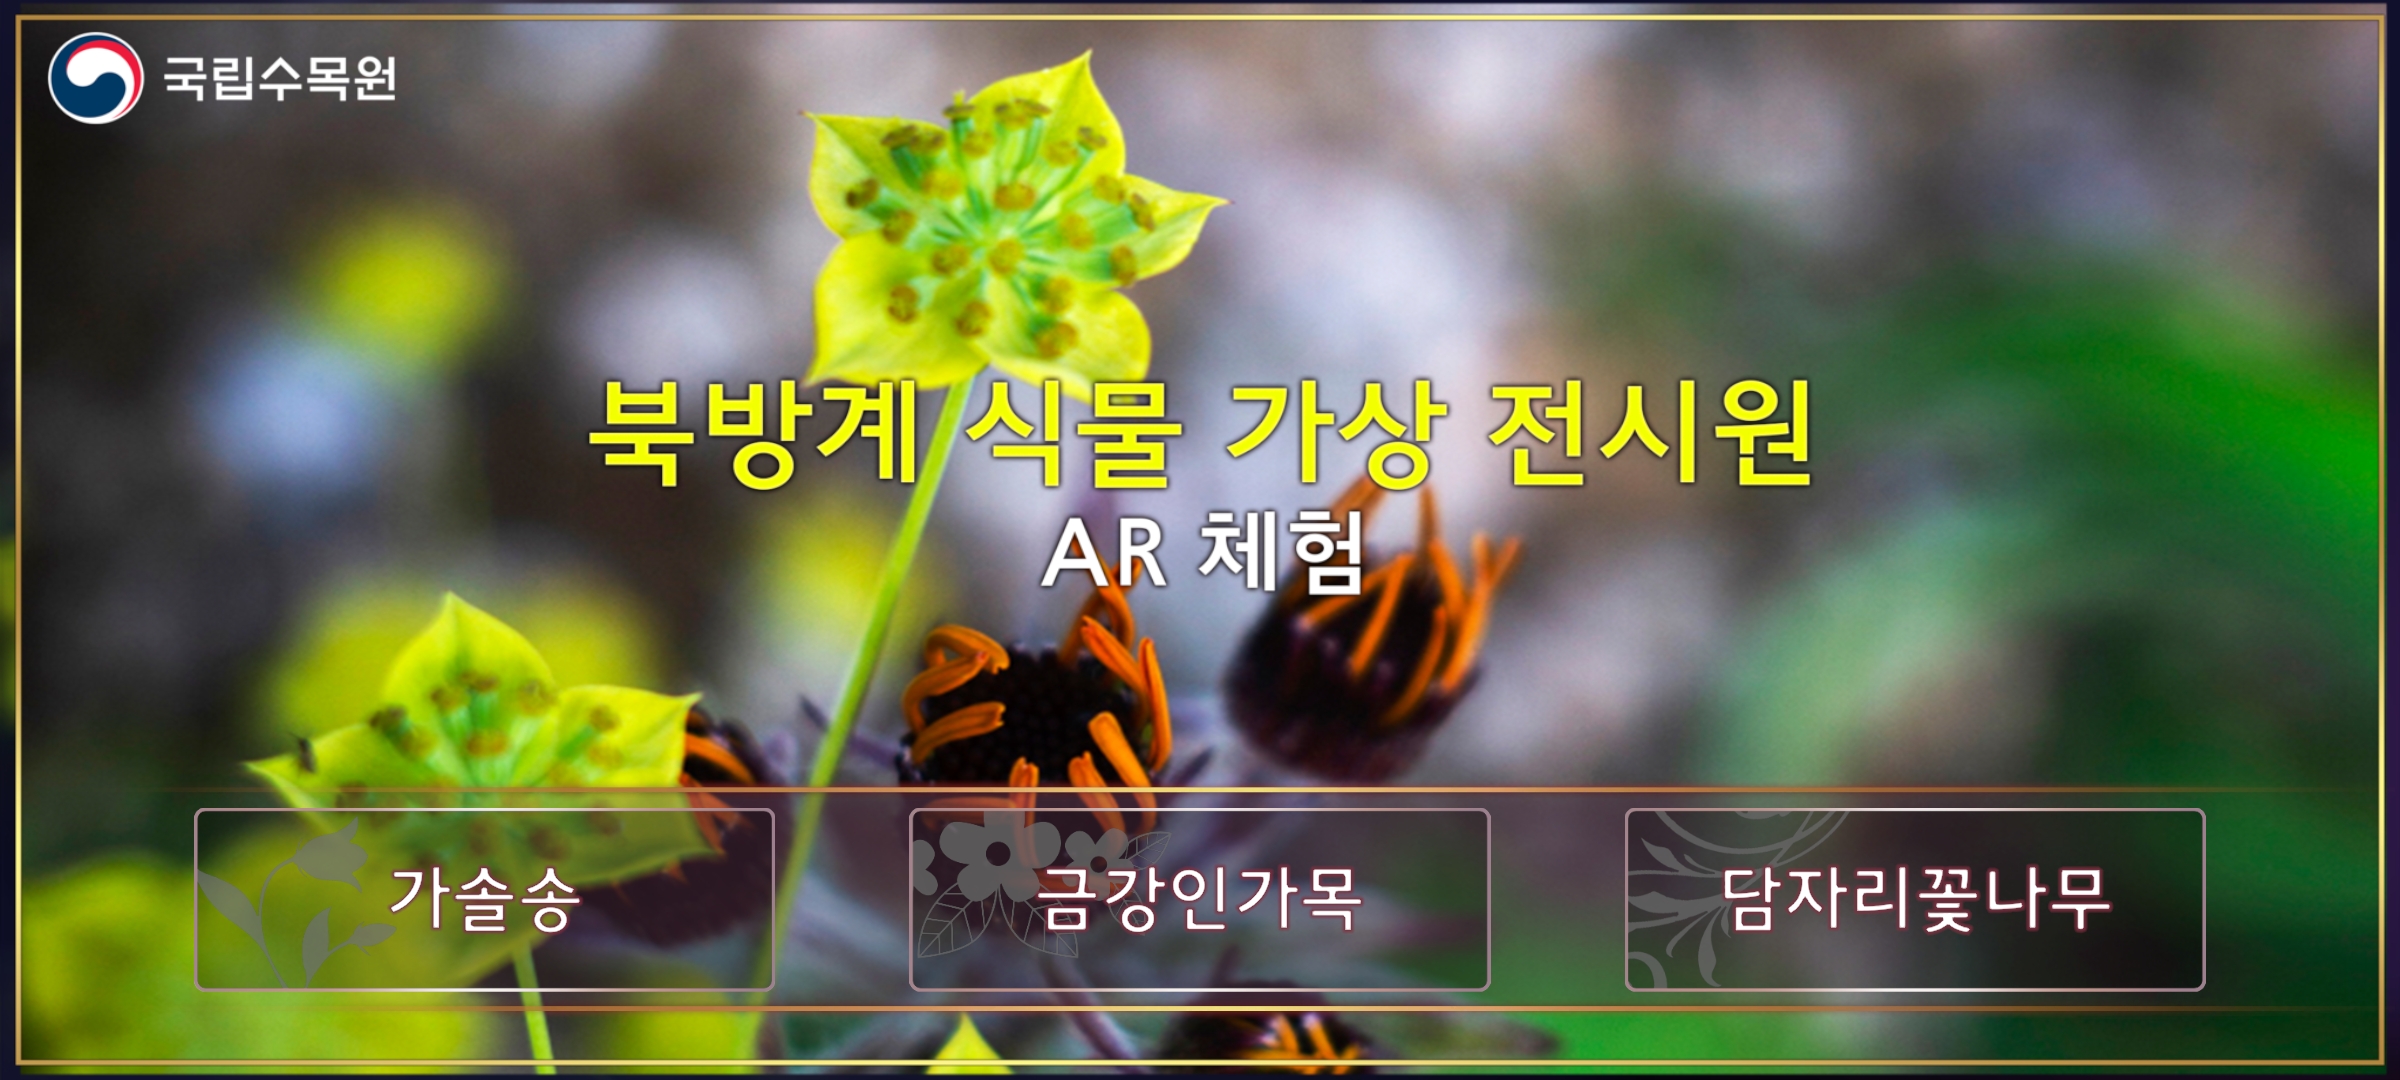 스마트폰으로 북한식물을 만나는 앱 ‘북방계식물 가상(AR) 전시원’ 출시 이미지1